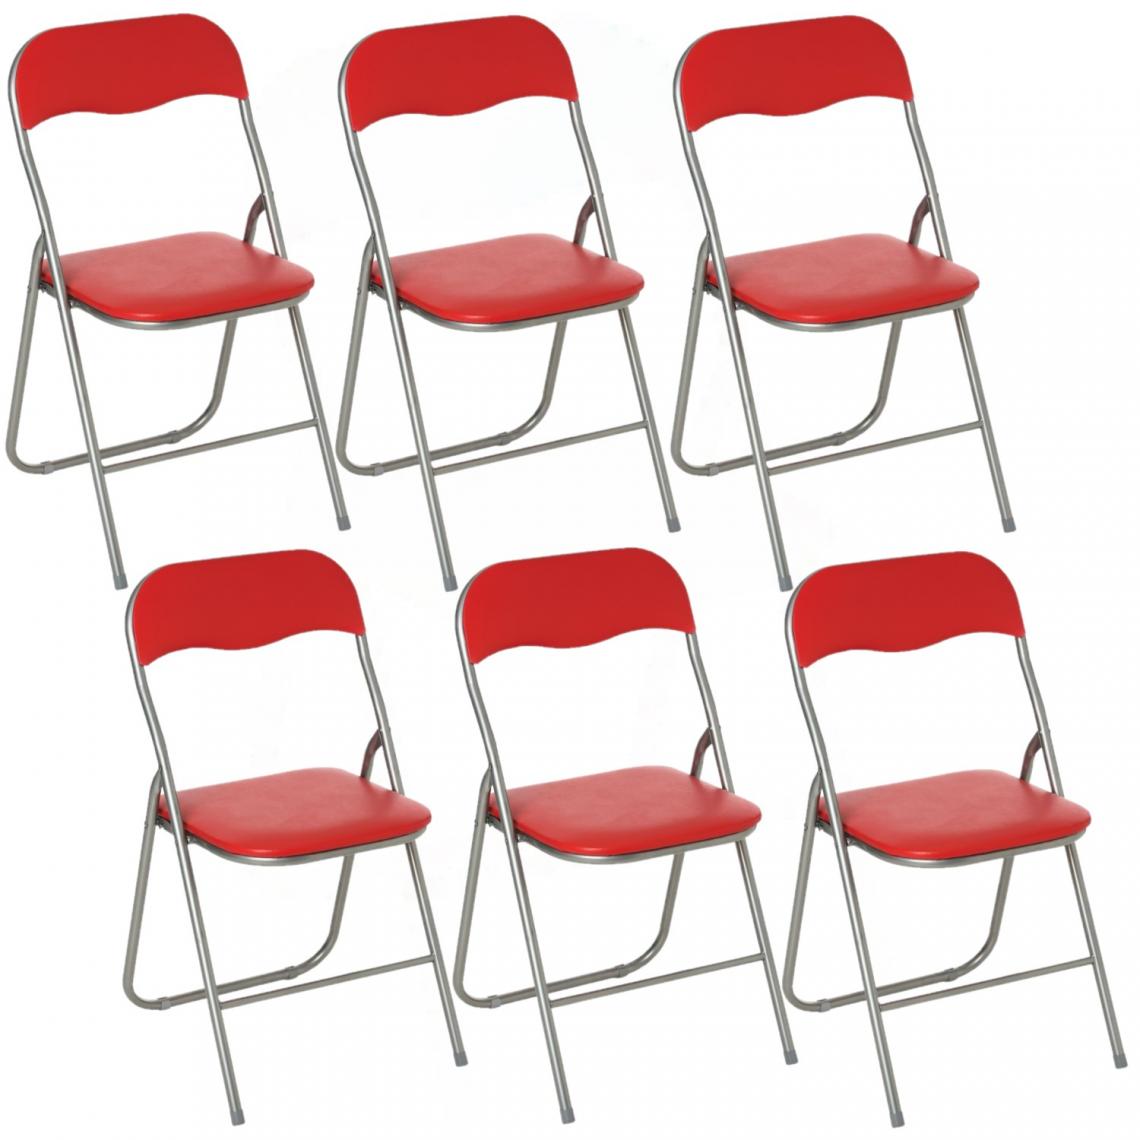 Toilinux - Lot de 6 Chaises pliantes en PVC - Rouge - Chaises